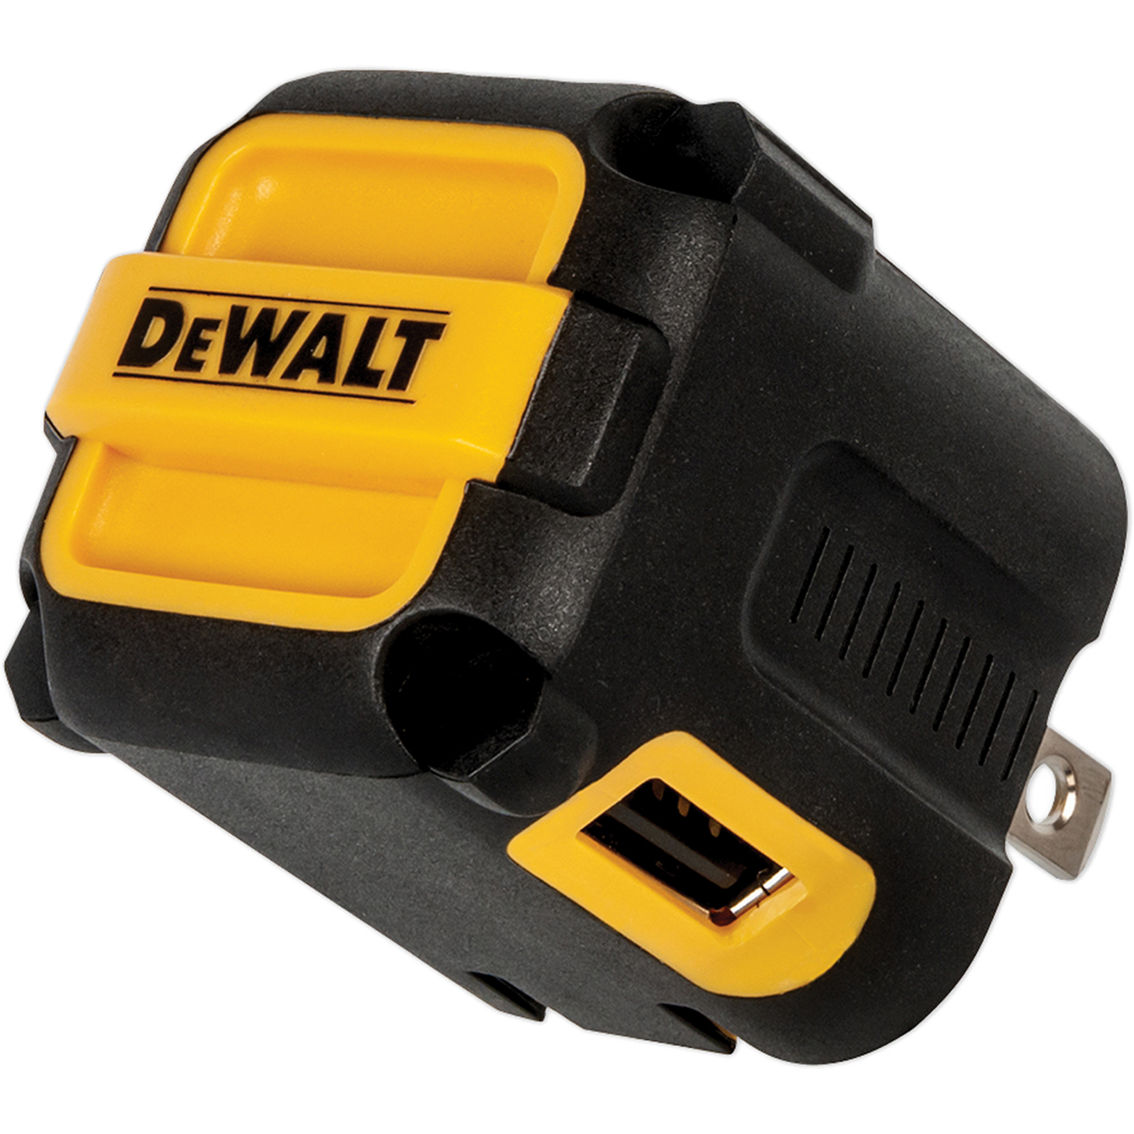 DeWalt NeverBlock 2-Port Worksite USB Charger - Image 2 of 5